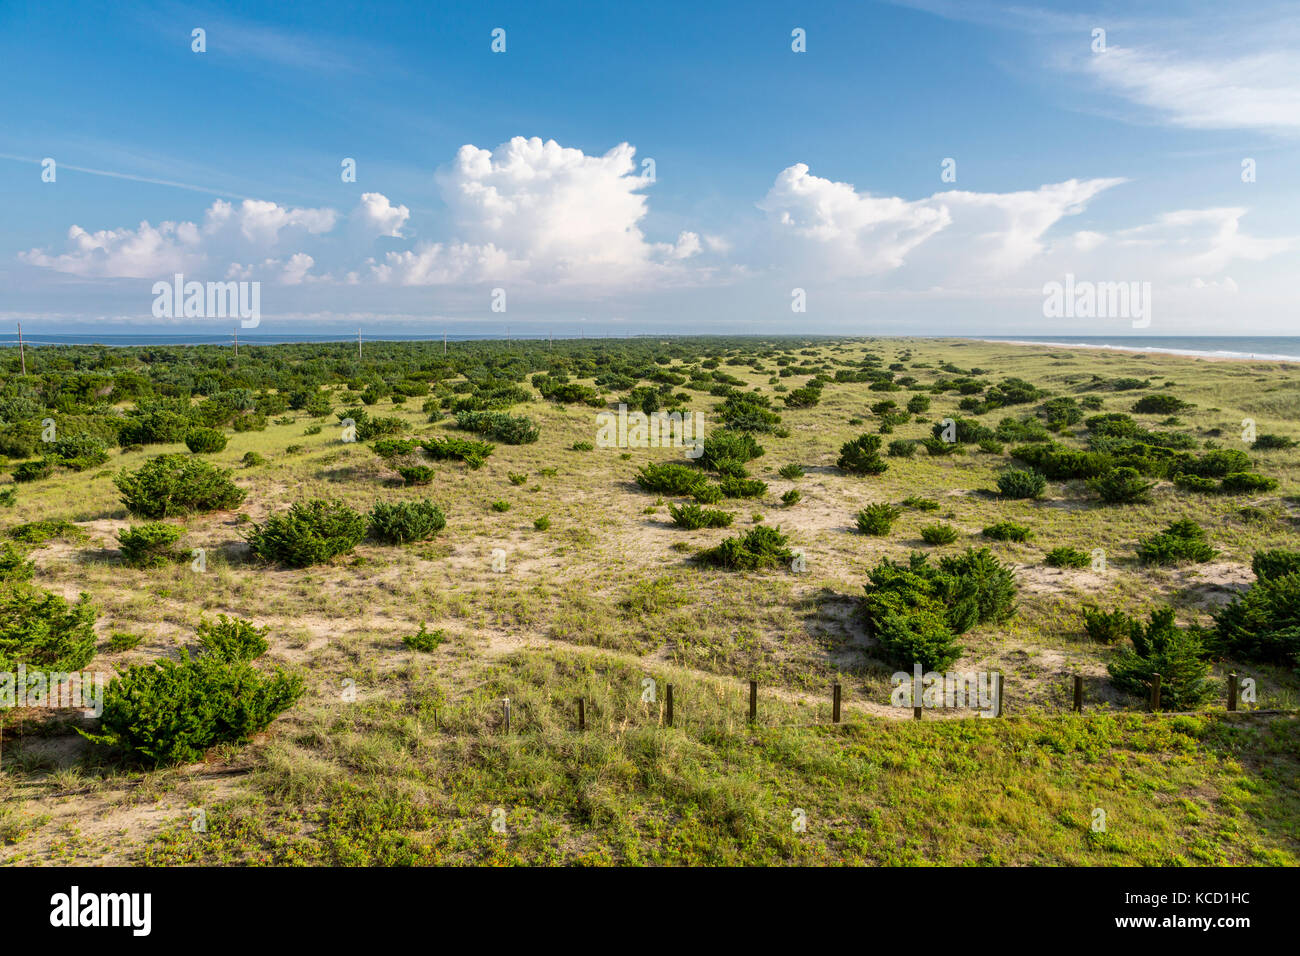 Avon, Outer Banks, North Carolina, USA. Vegetation auf einer vorgelagerten Insel stabilisiert die Dünen. Atlantik oben rechts, Currituck Sound oben links. Stockfoto